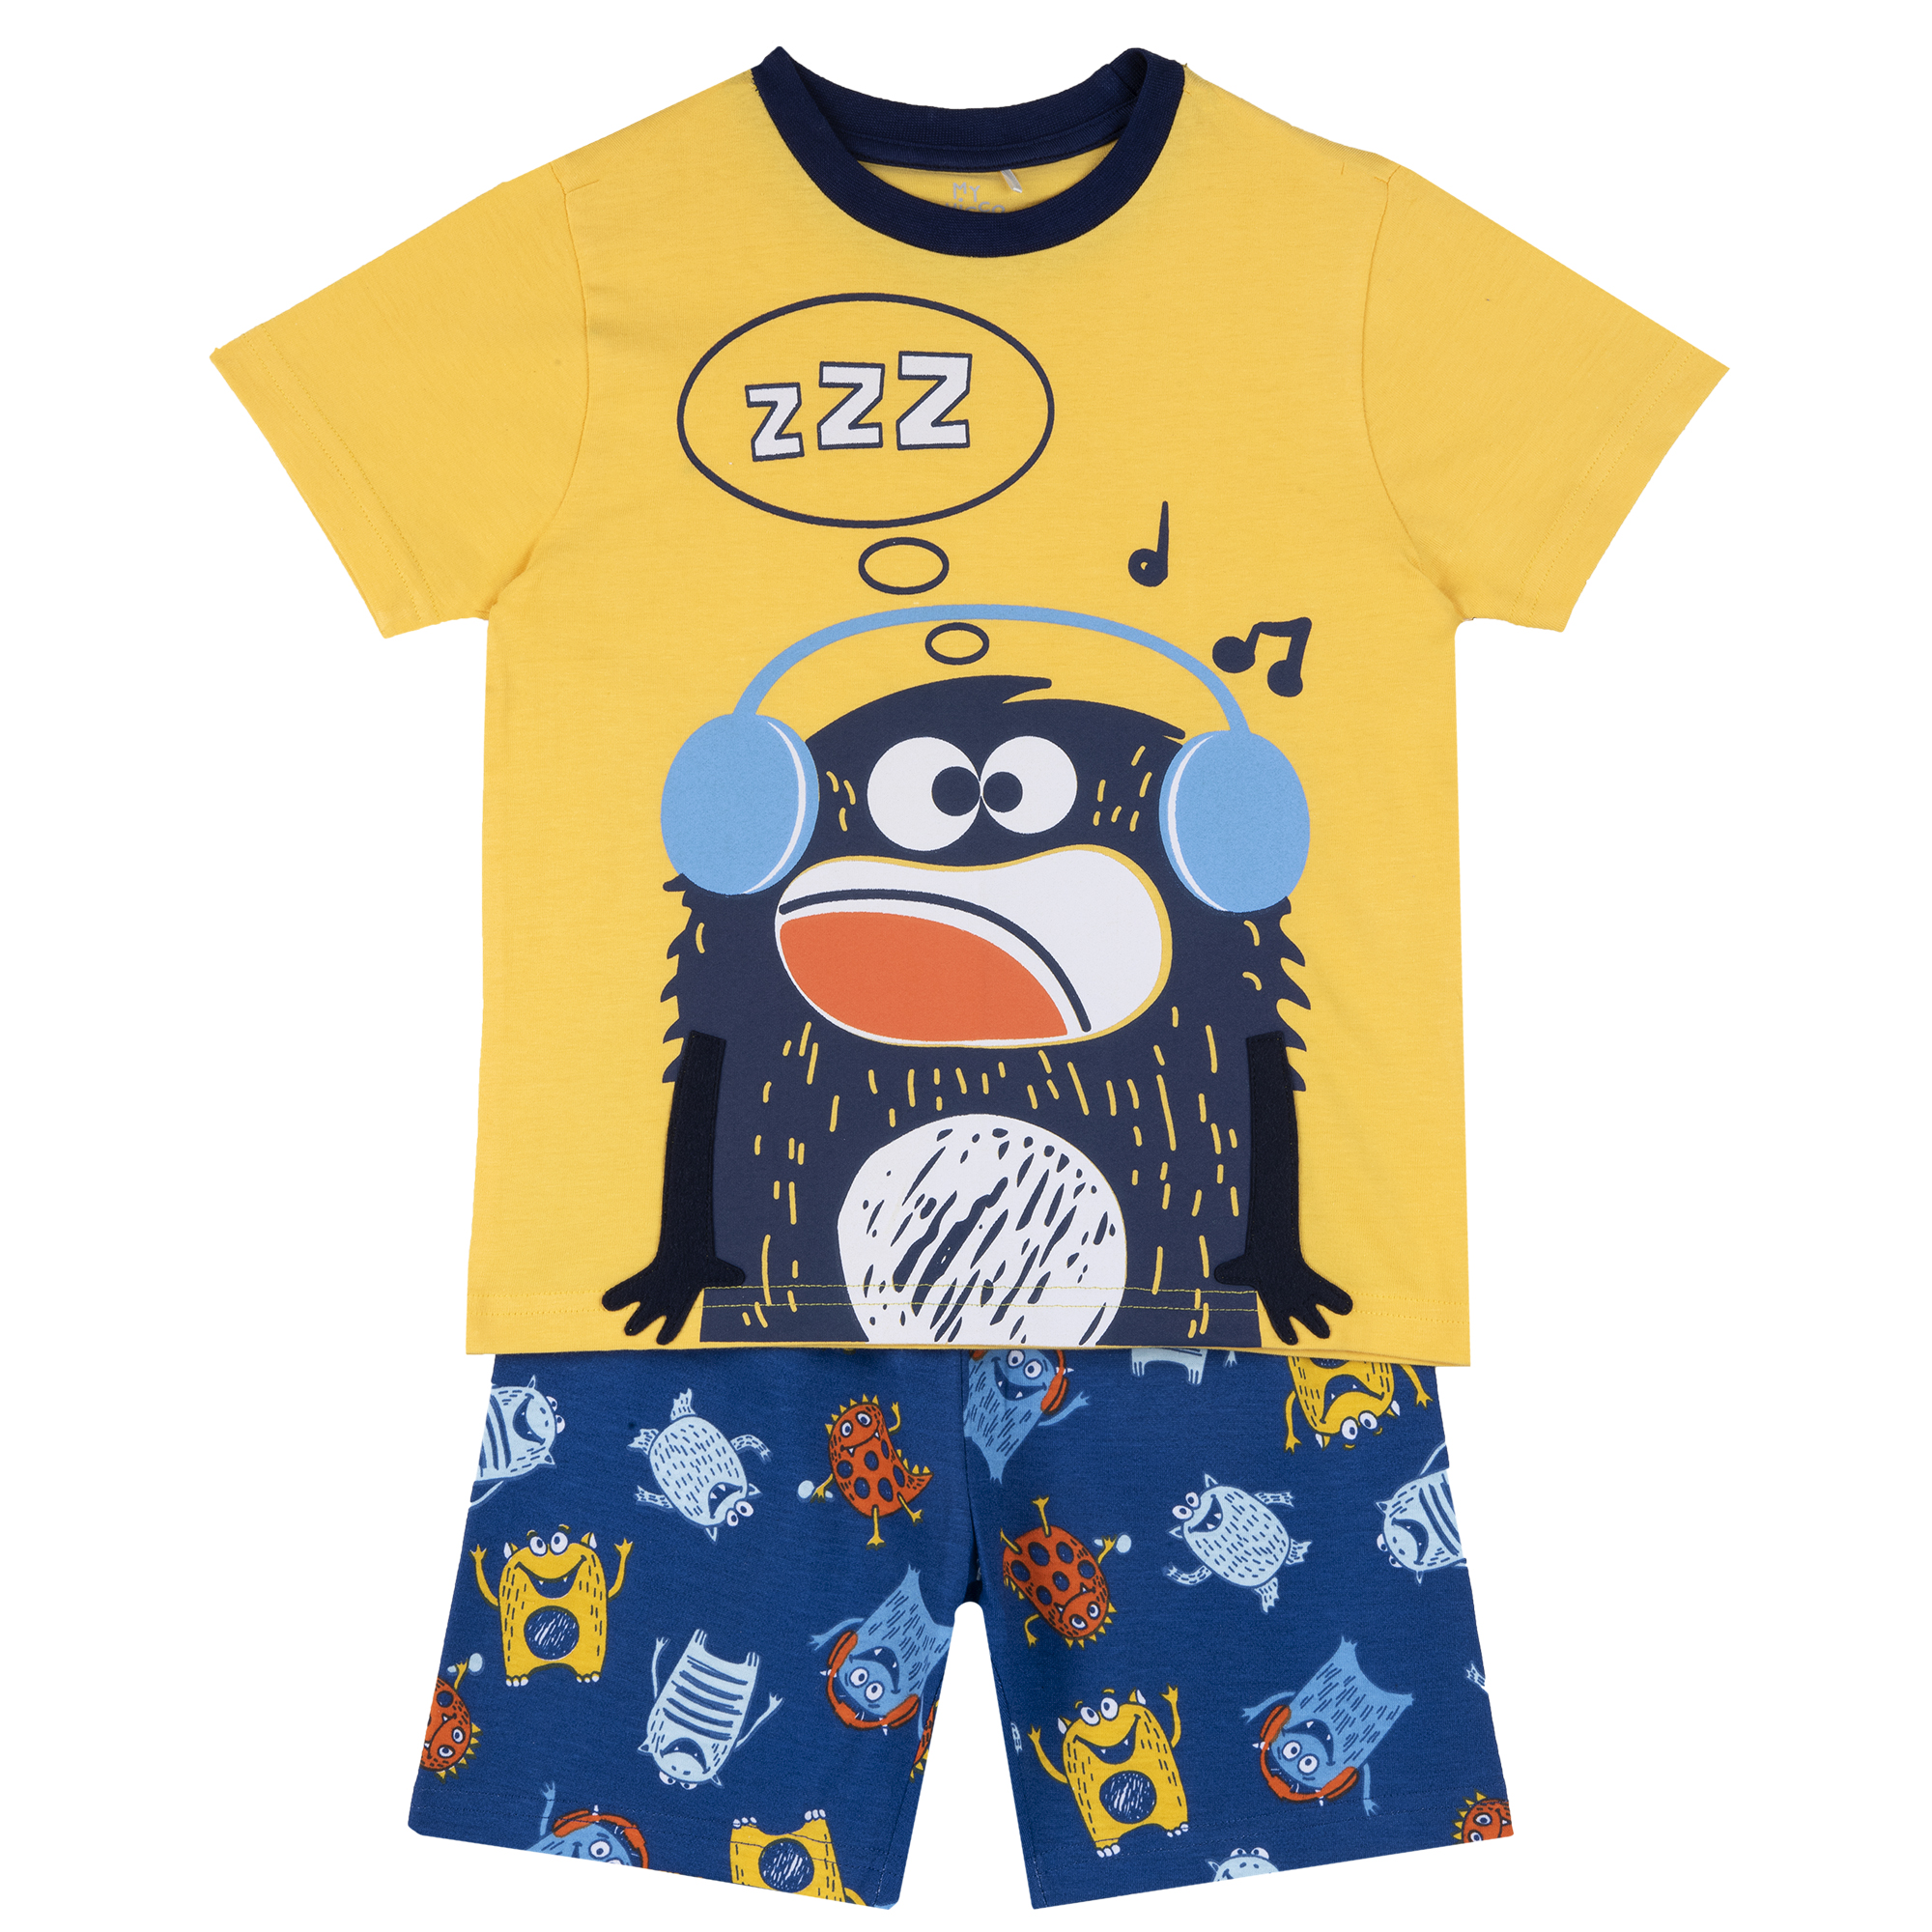 Pijama copii Chicco, albastru cu galben, 35394 CHICCO